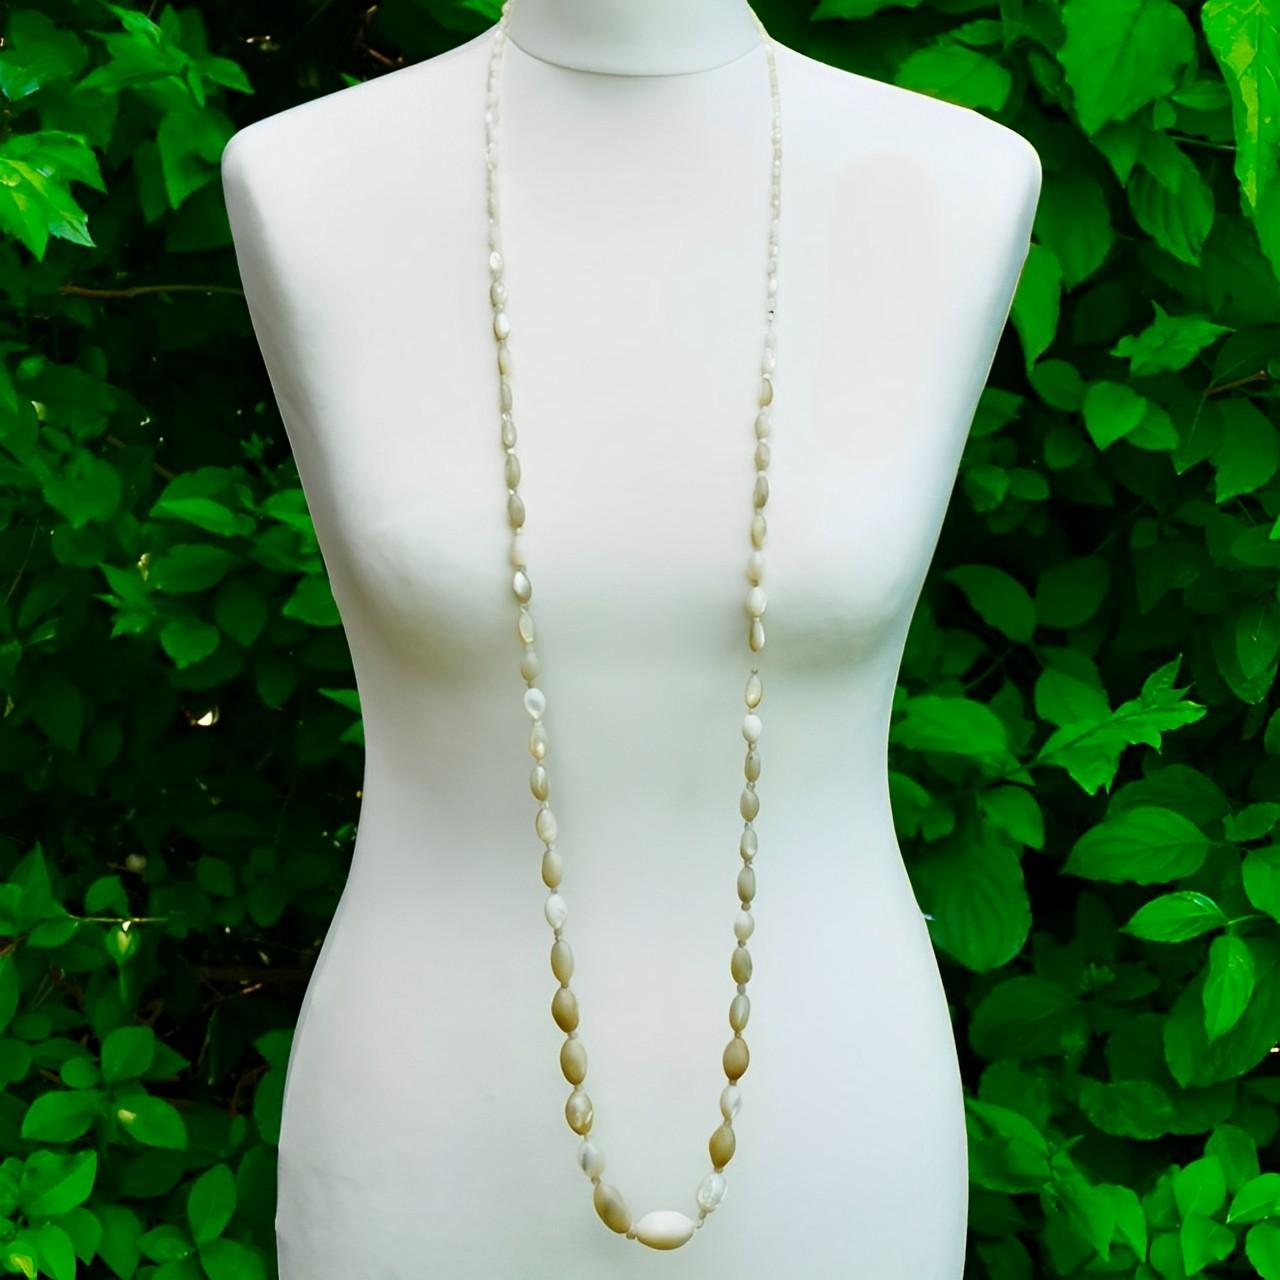 

Joli long collier en nacre avec des perles de forme ovale, de petits intercalaires en nacre et un fermoir serti de strass. Longueur du collier : 130 cm. 

Le collier est composé de perles de taille graduelle. Il a été redessiné et réajusté dans le